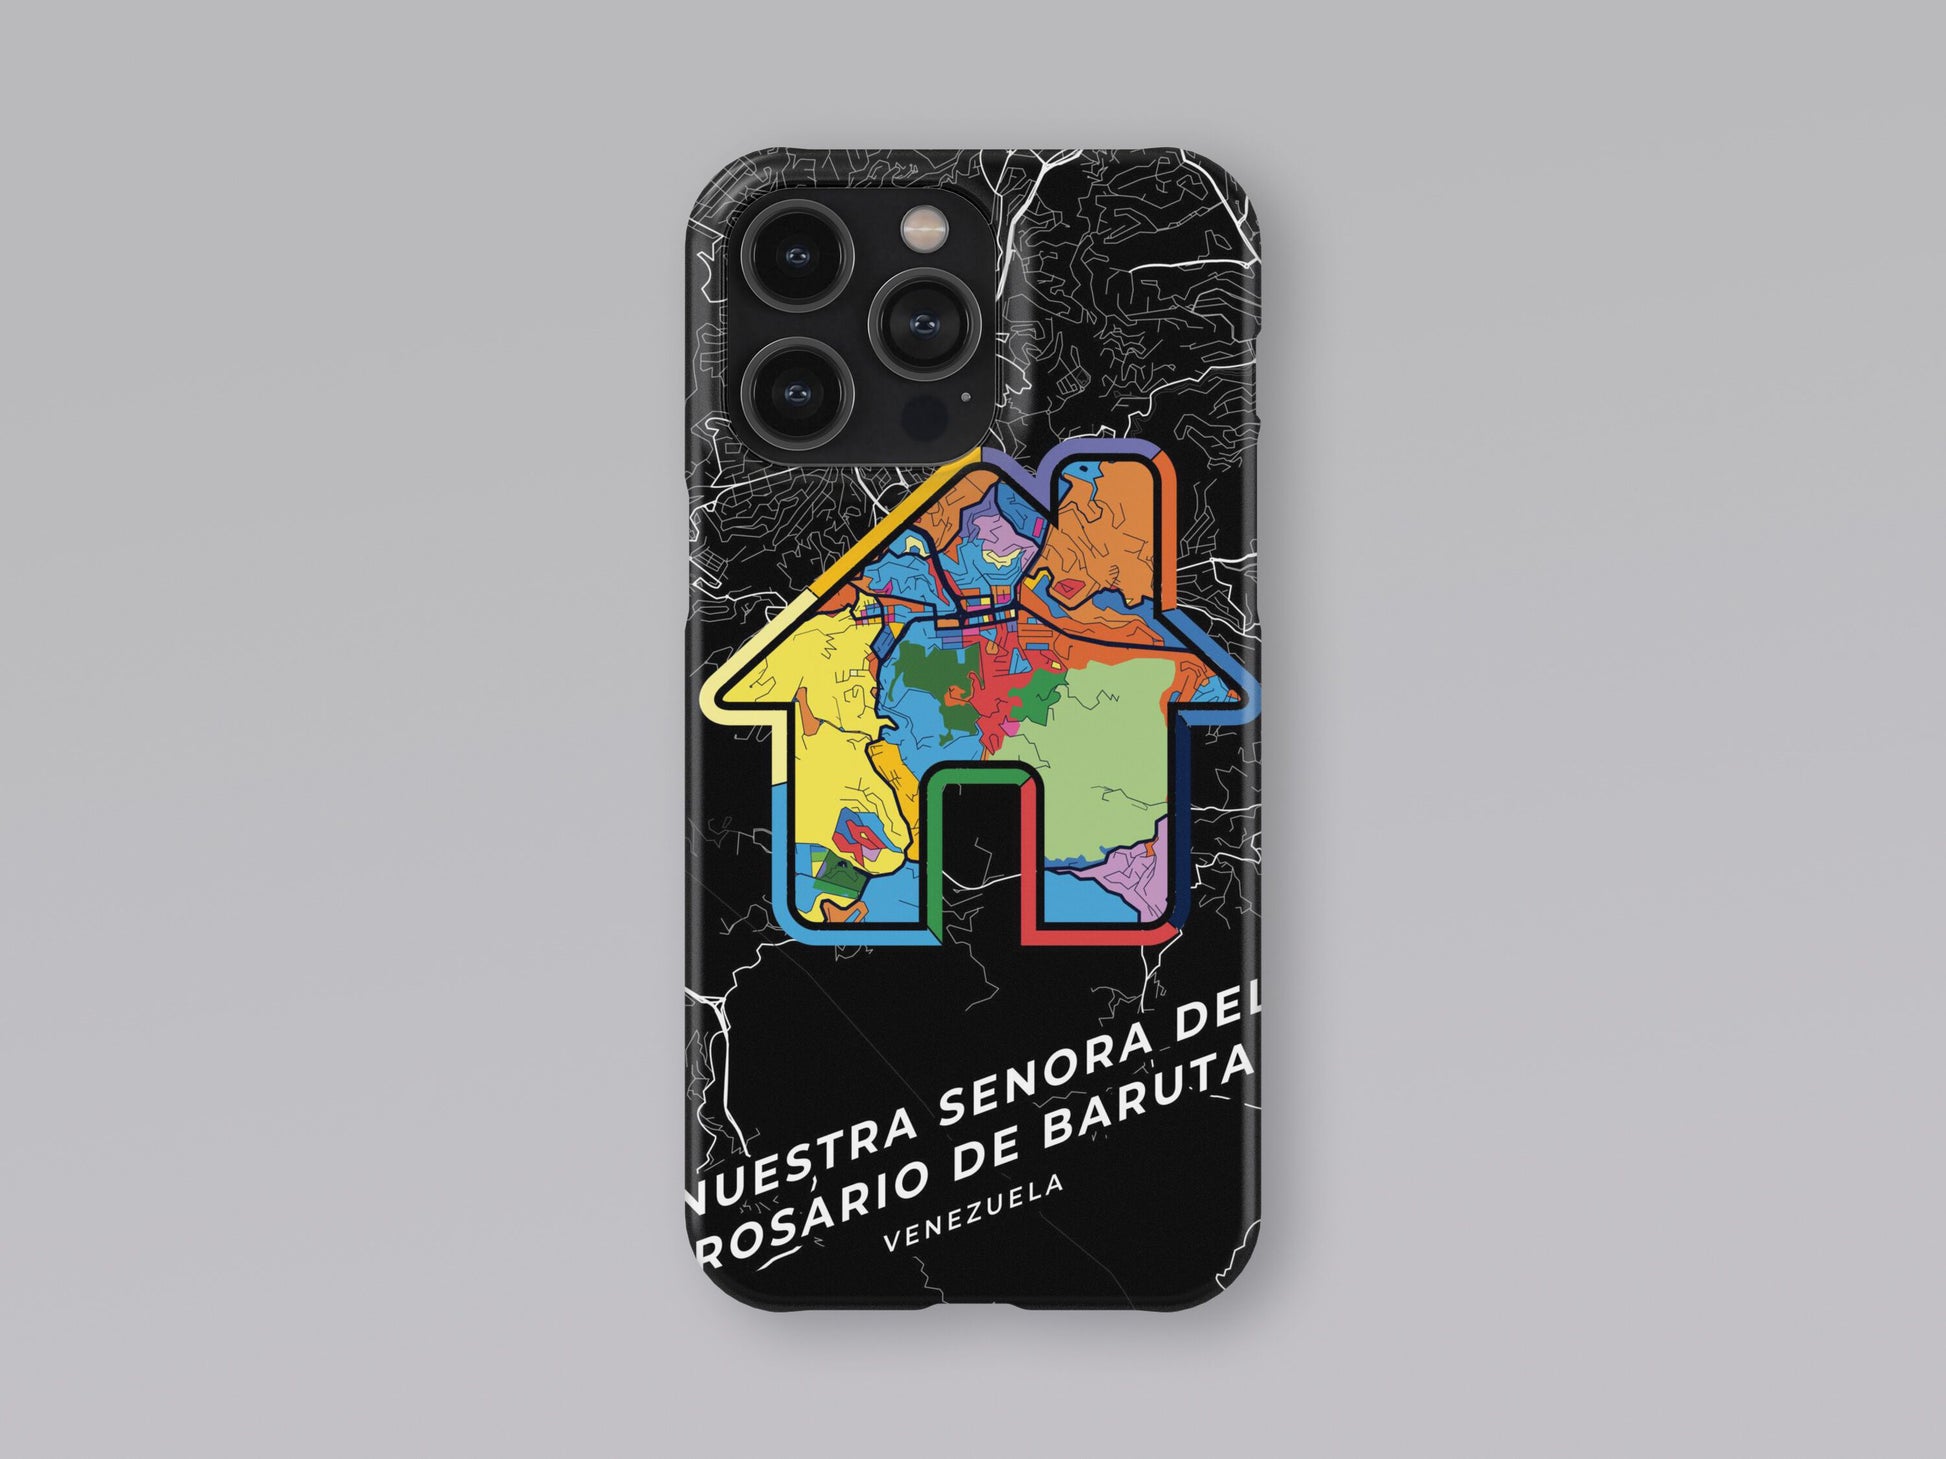 Nuestra Senora Del Rosario De Baruta Venezuela slim phone case with colorful icon 3